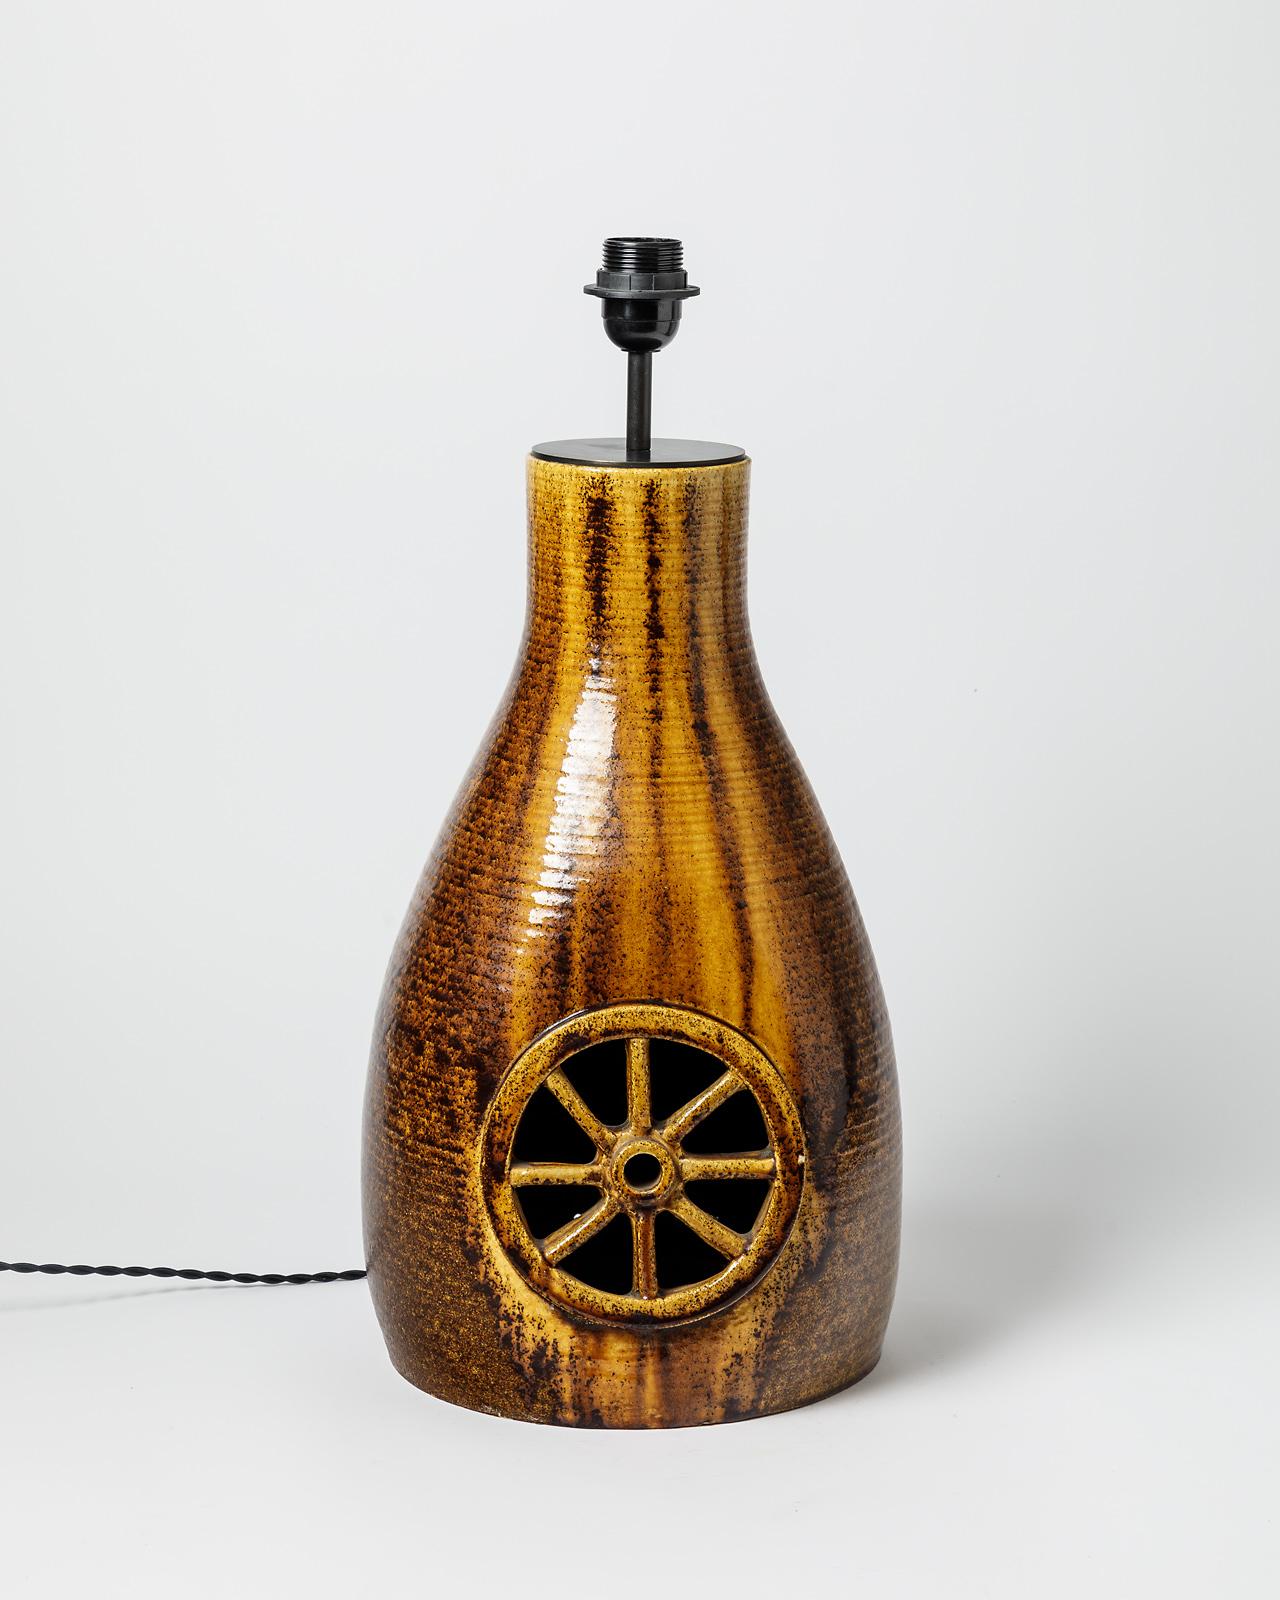 Lampe en céramique émaillée par Les potiers d'Accolay.
Conditions d'origine parfaites. 
Signature de l'Artistics sous la base 